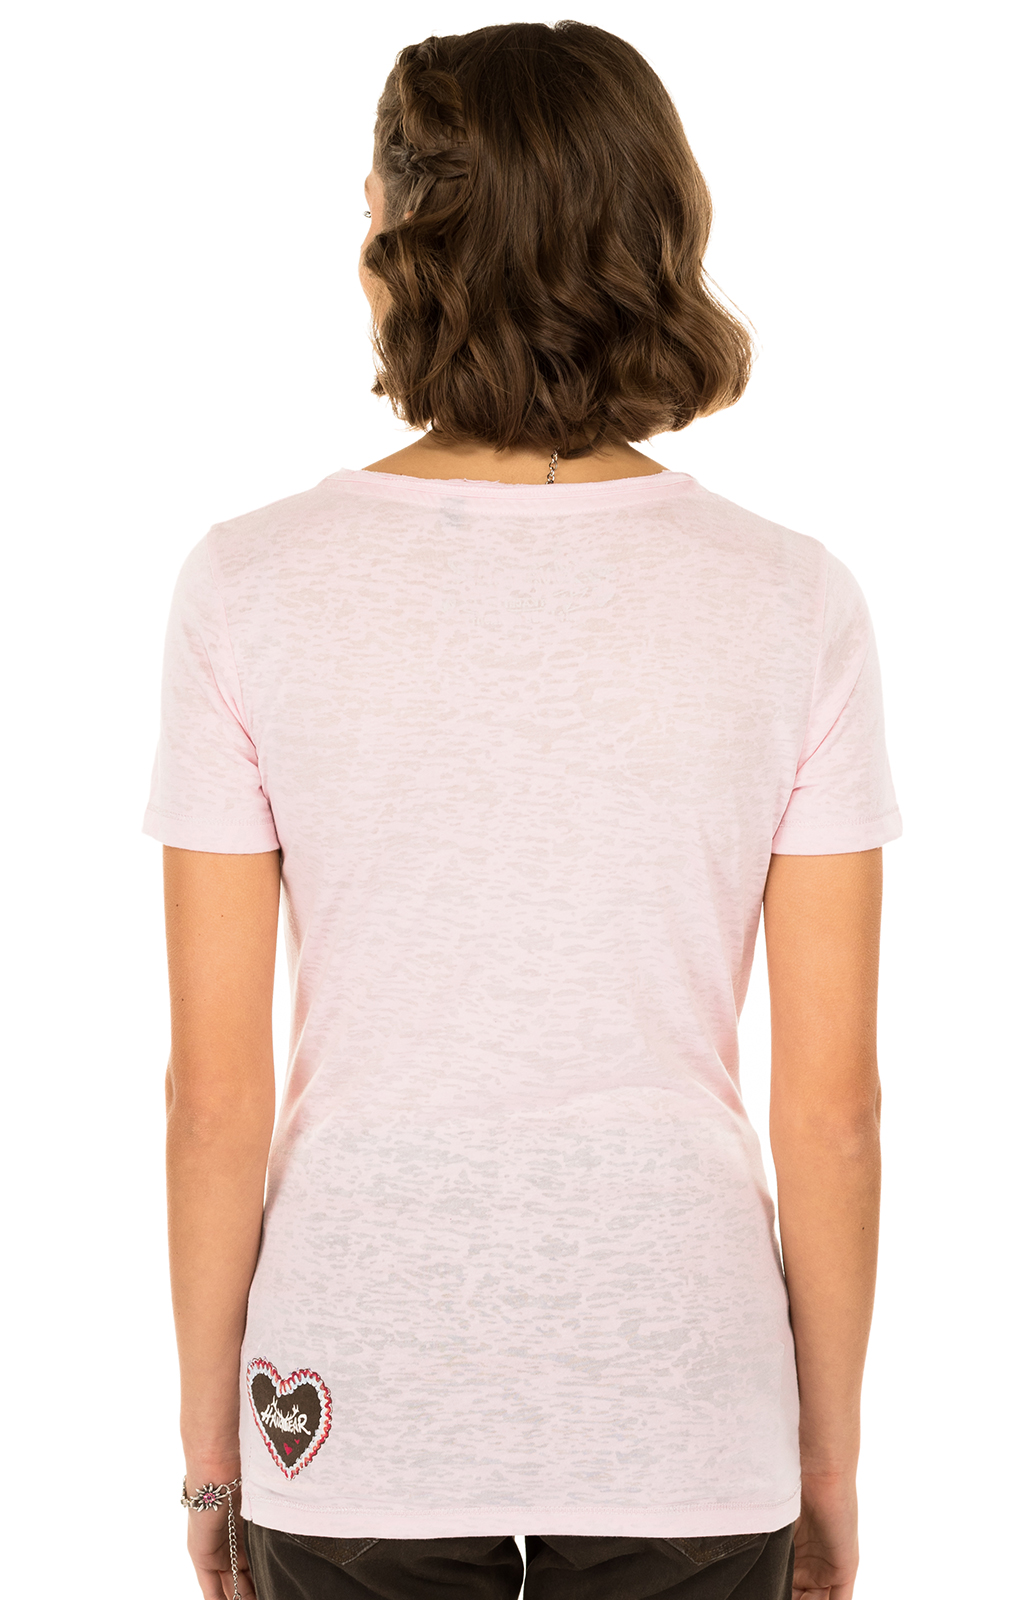 weitere Bilder von Klederdracht T - Shirt ANTARES roze